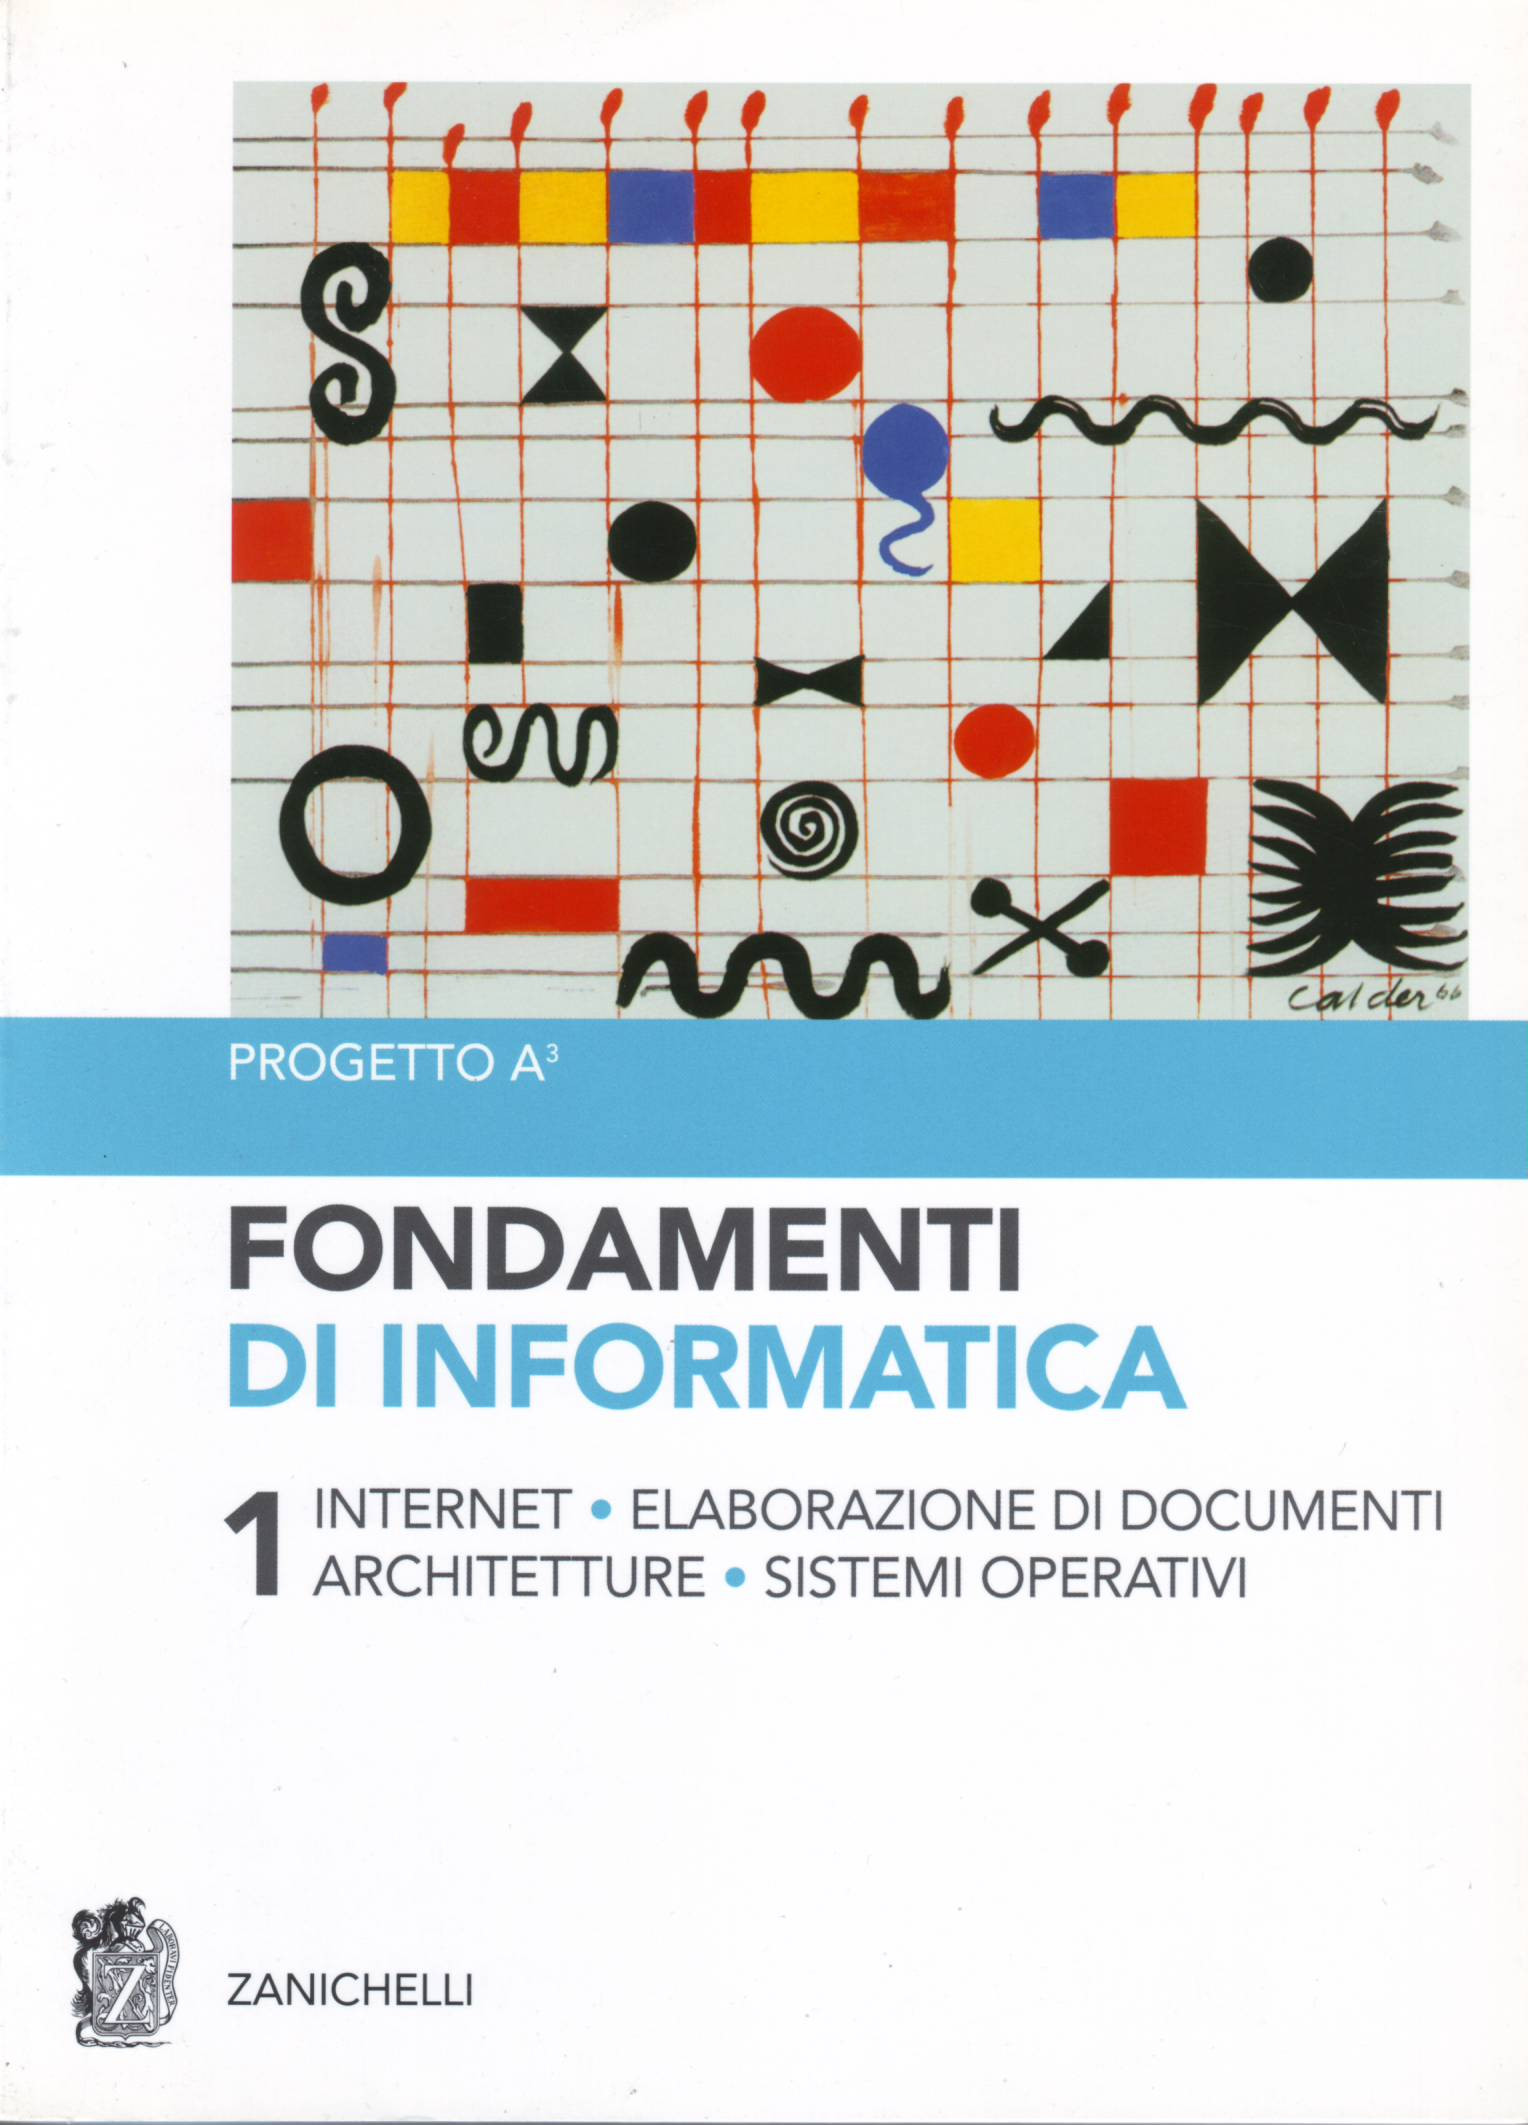 Fondamenti di informatica - Volume 2 - Reti, Basi di dati, Multimedia, Linguaggi, Algoritmi